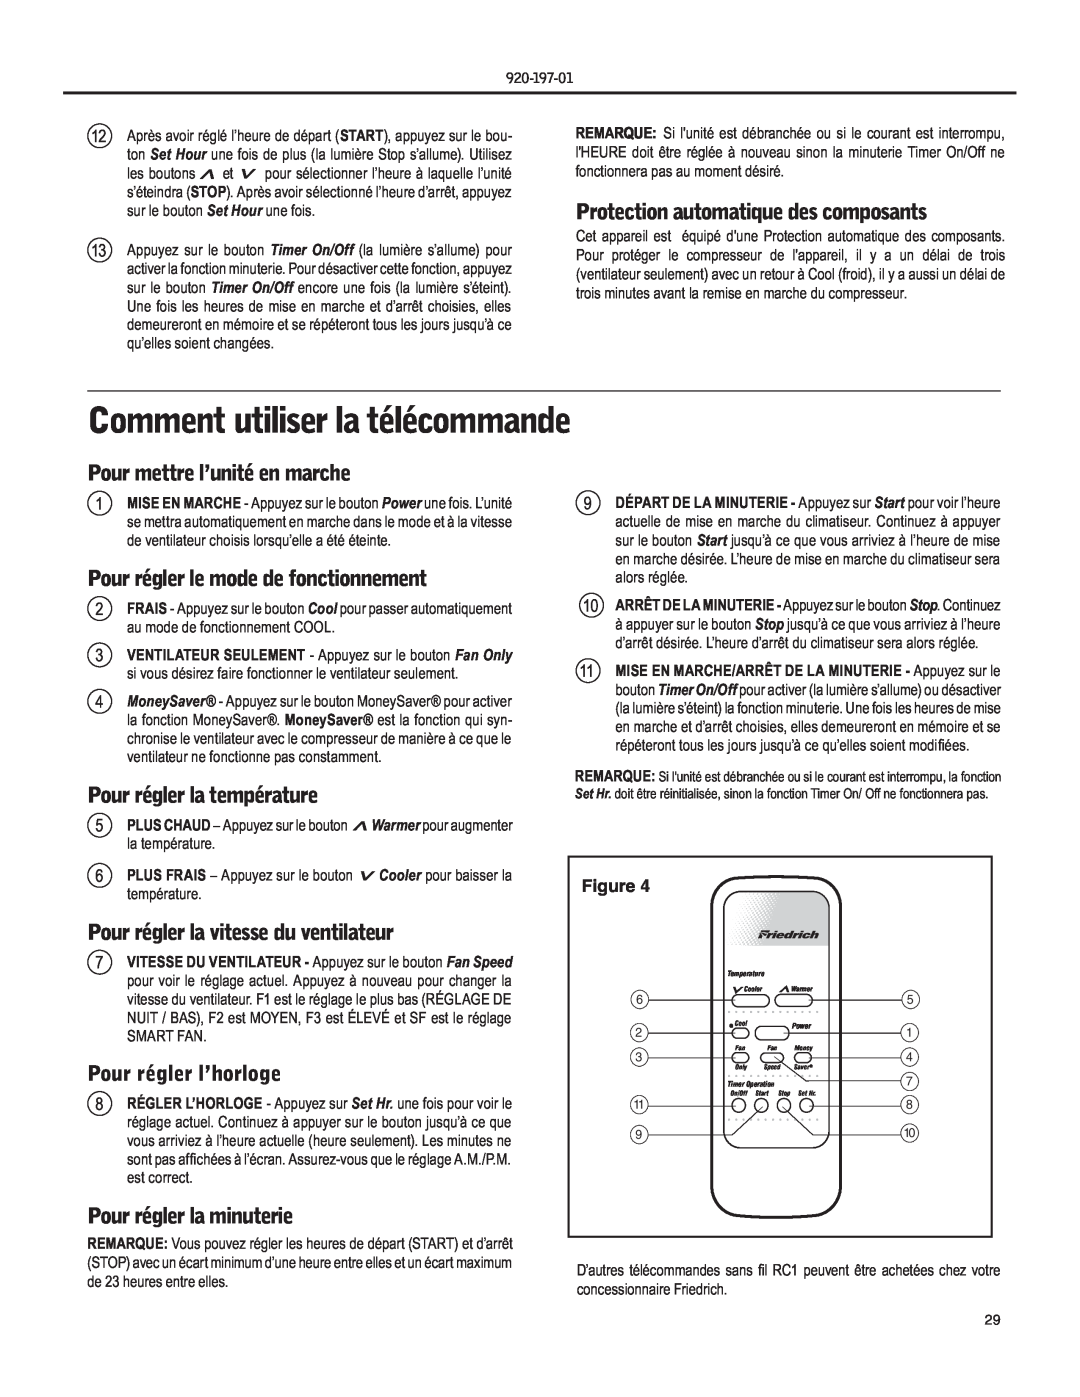 Friedrich EQ08, YQ07 Comment utiliser la télécommande, Protection automatique des composants, Pour régler l’horloge 